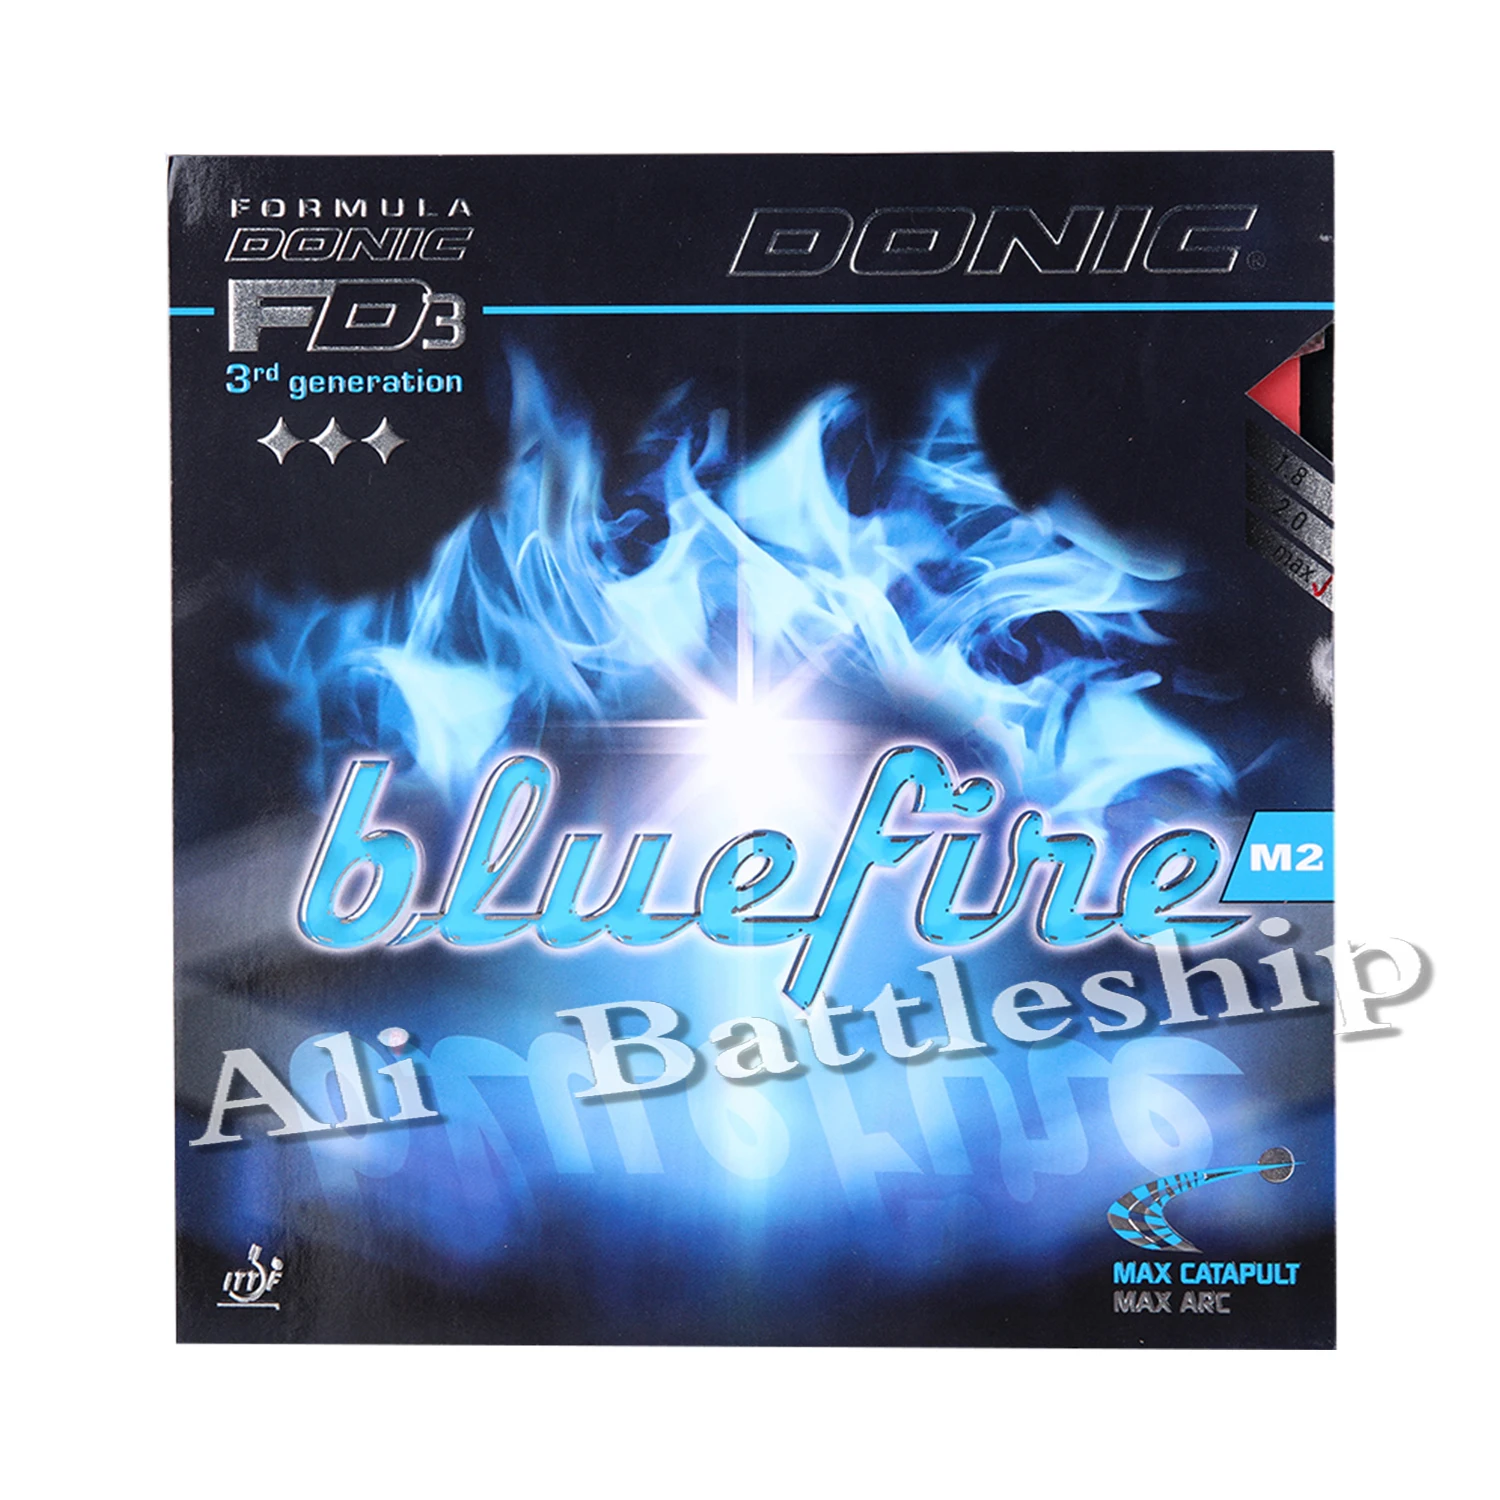 

Donic Original Blue fire M2 Bluefire Pips-in BLUE губка для настольного тенниса, резина, сильный спиннинг, прыщи из резины для пинг-понга